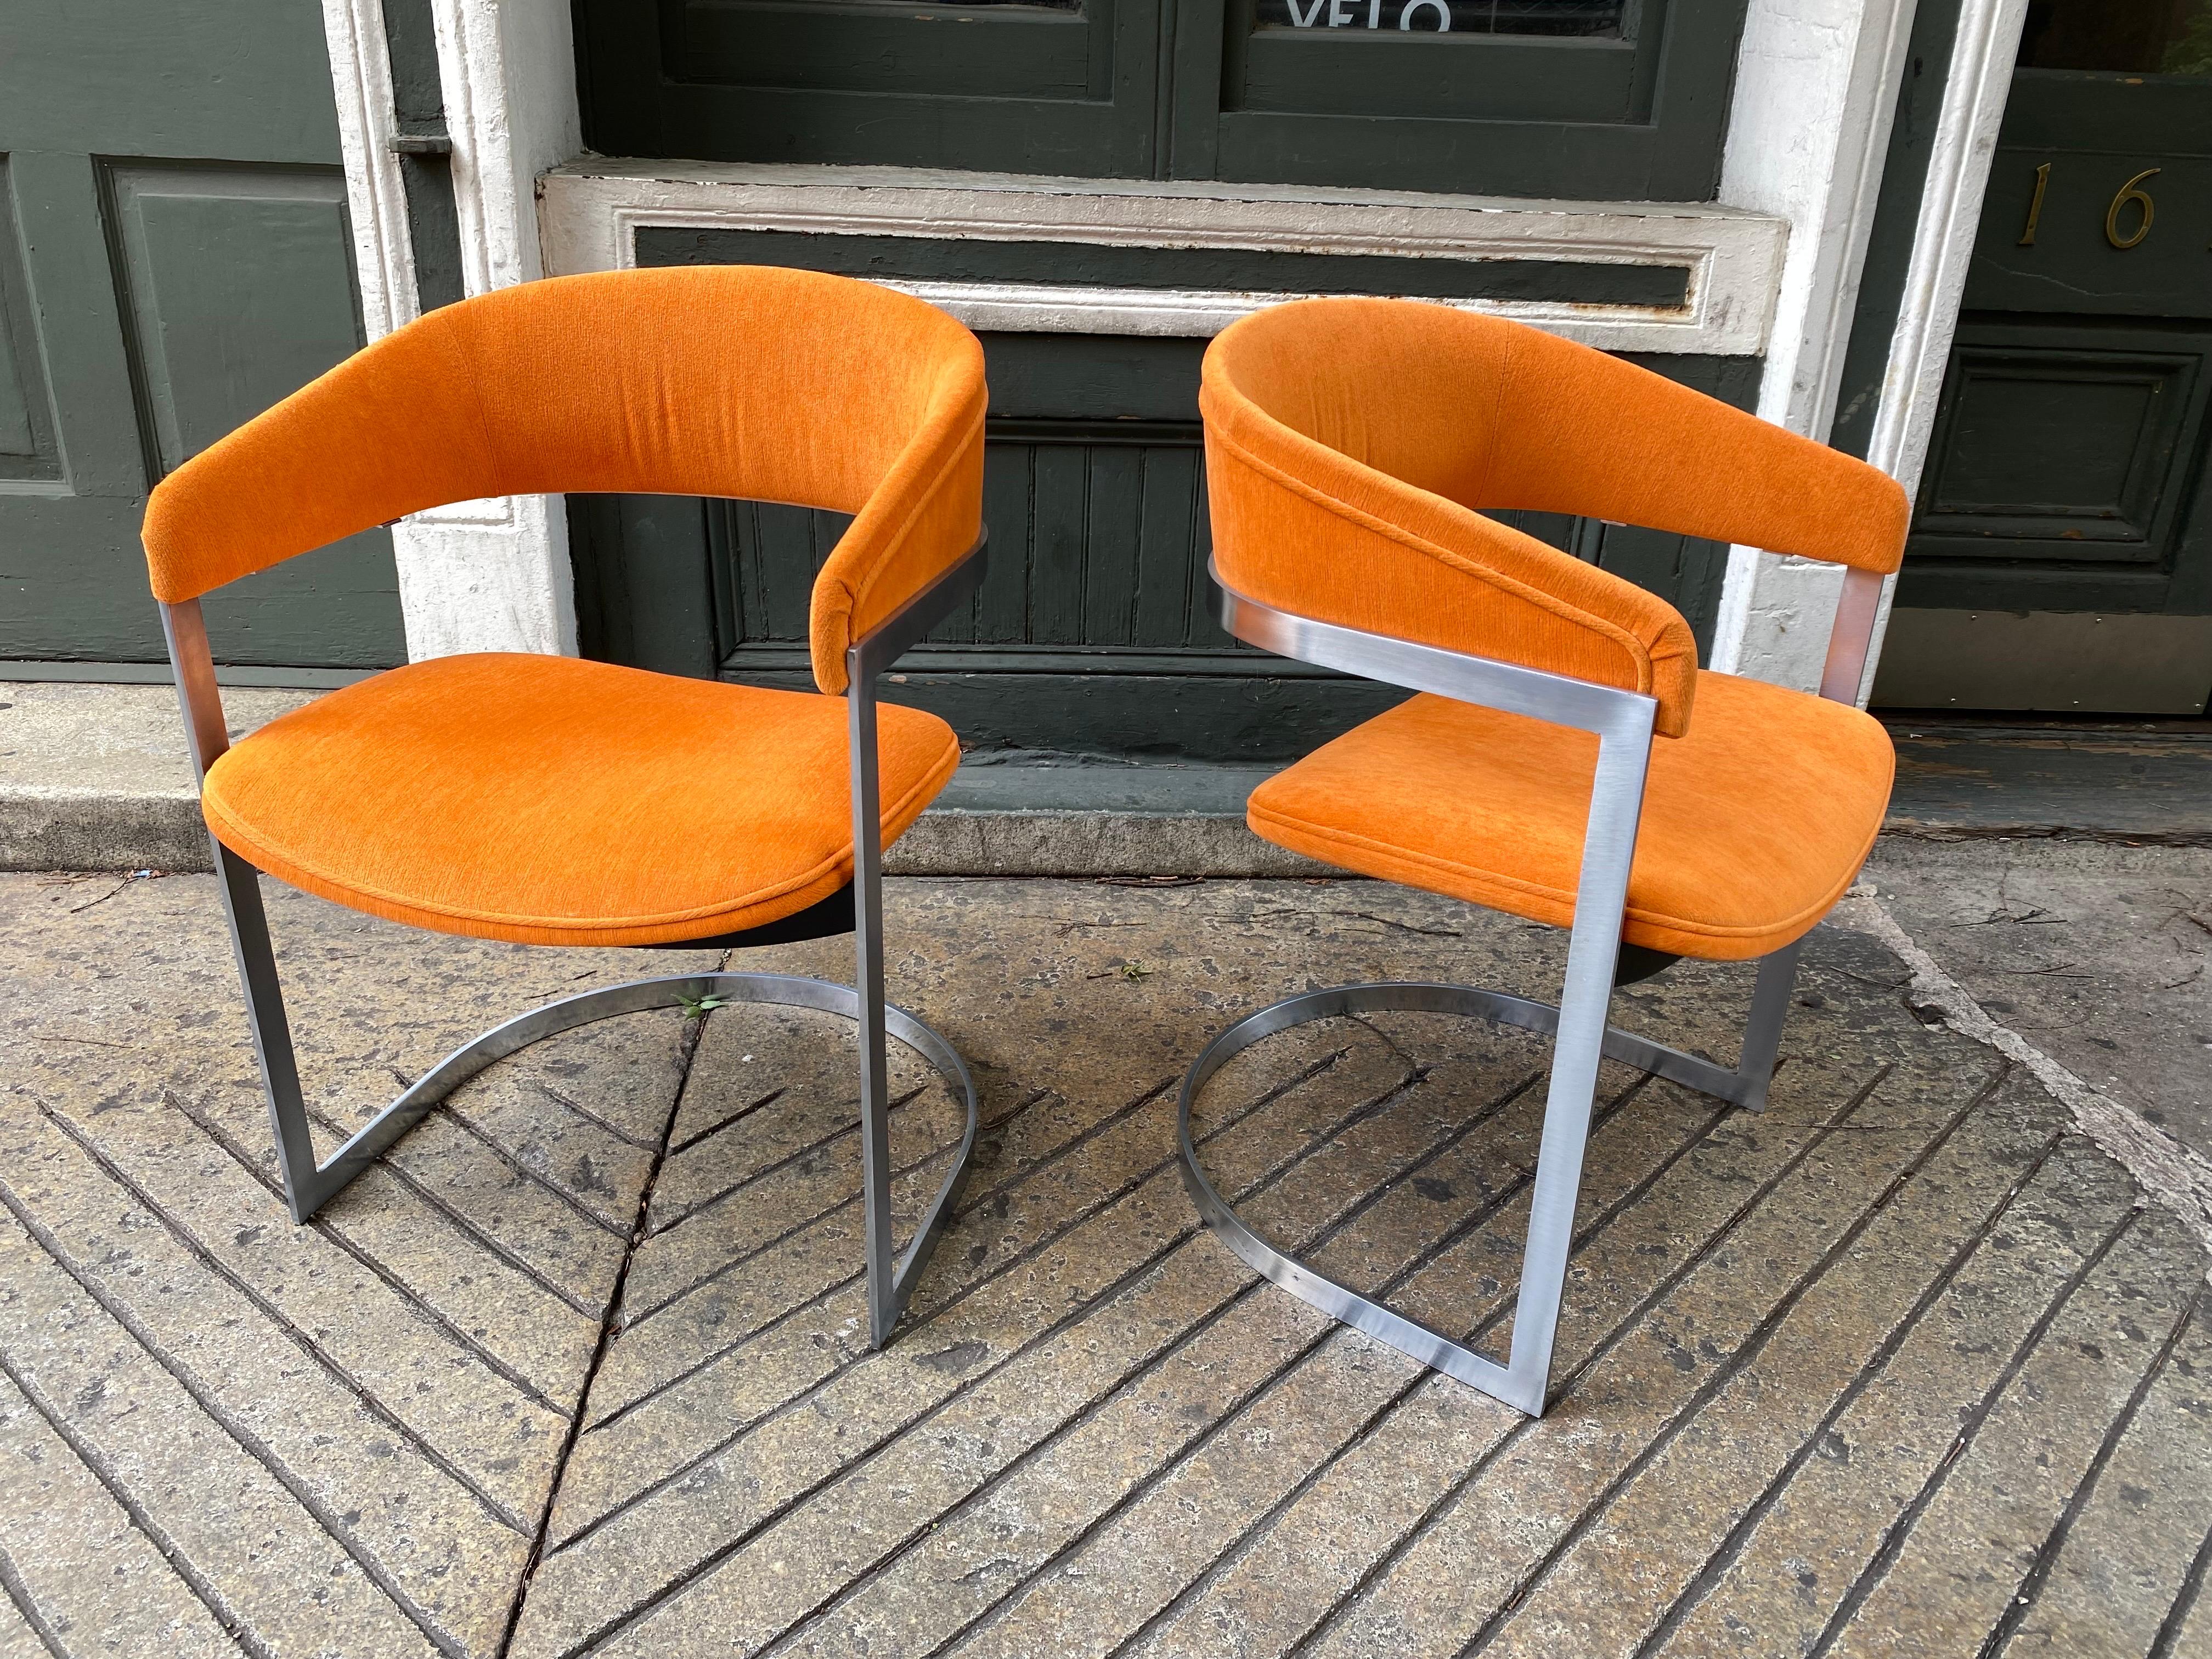 Chaises en aluminium avec rembourrage orange, dans le style de Milo Baughman pour Thayer Coggin. Remis en place ces deux dernières années. Stylistes et confortables ! L'aluminium est très propre ! Parfait pour un siège supplémentaire lorsque des